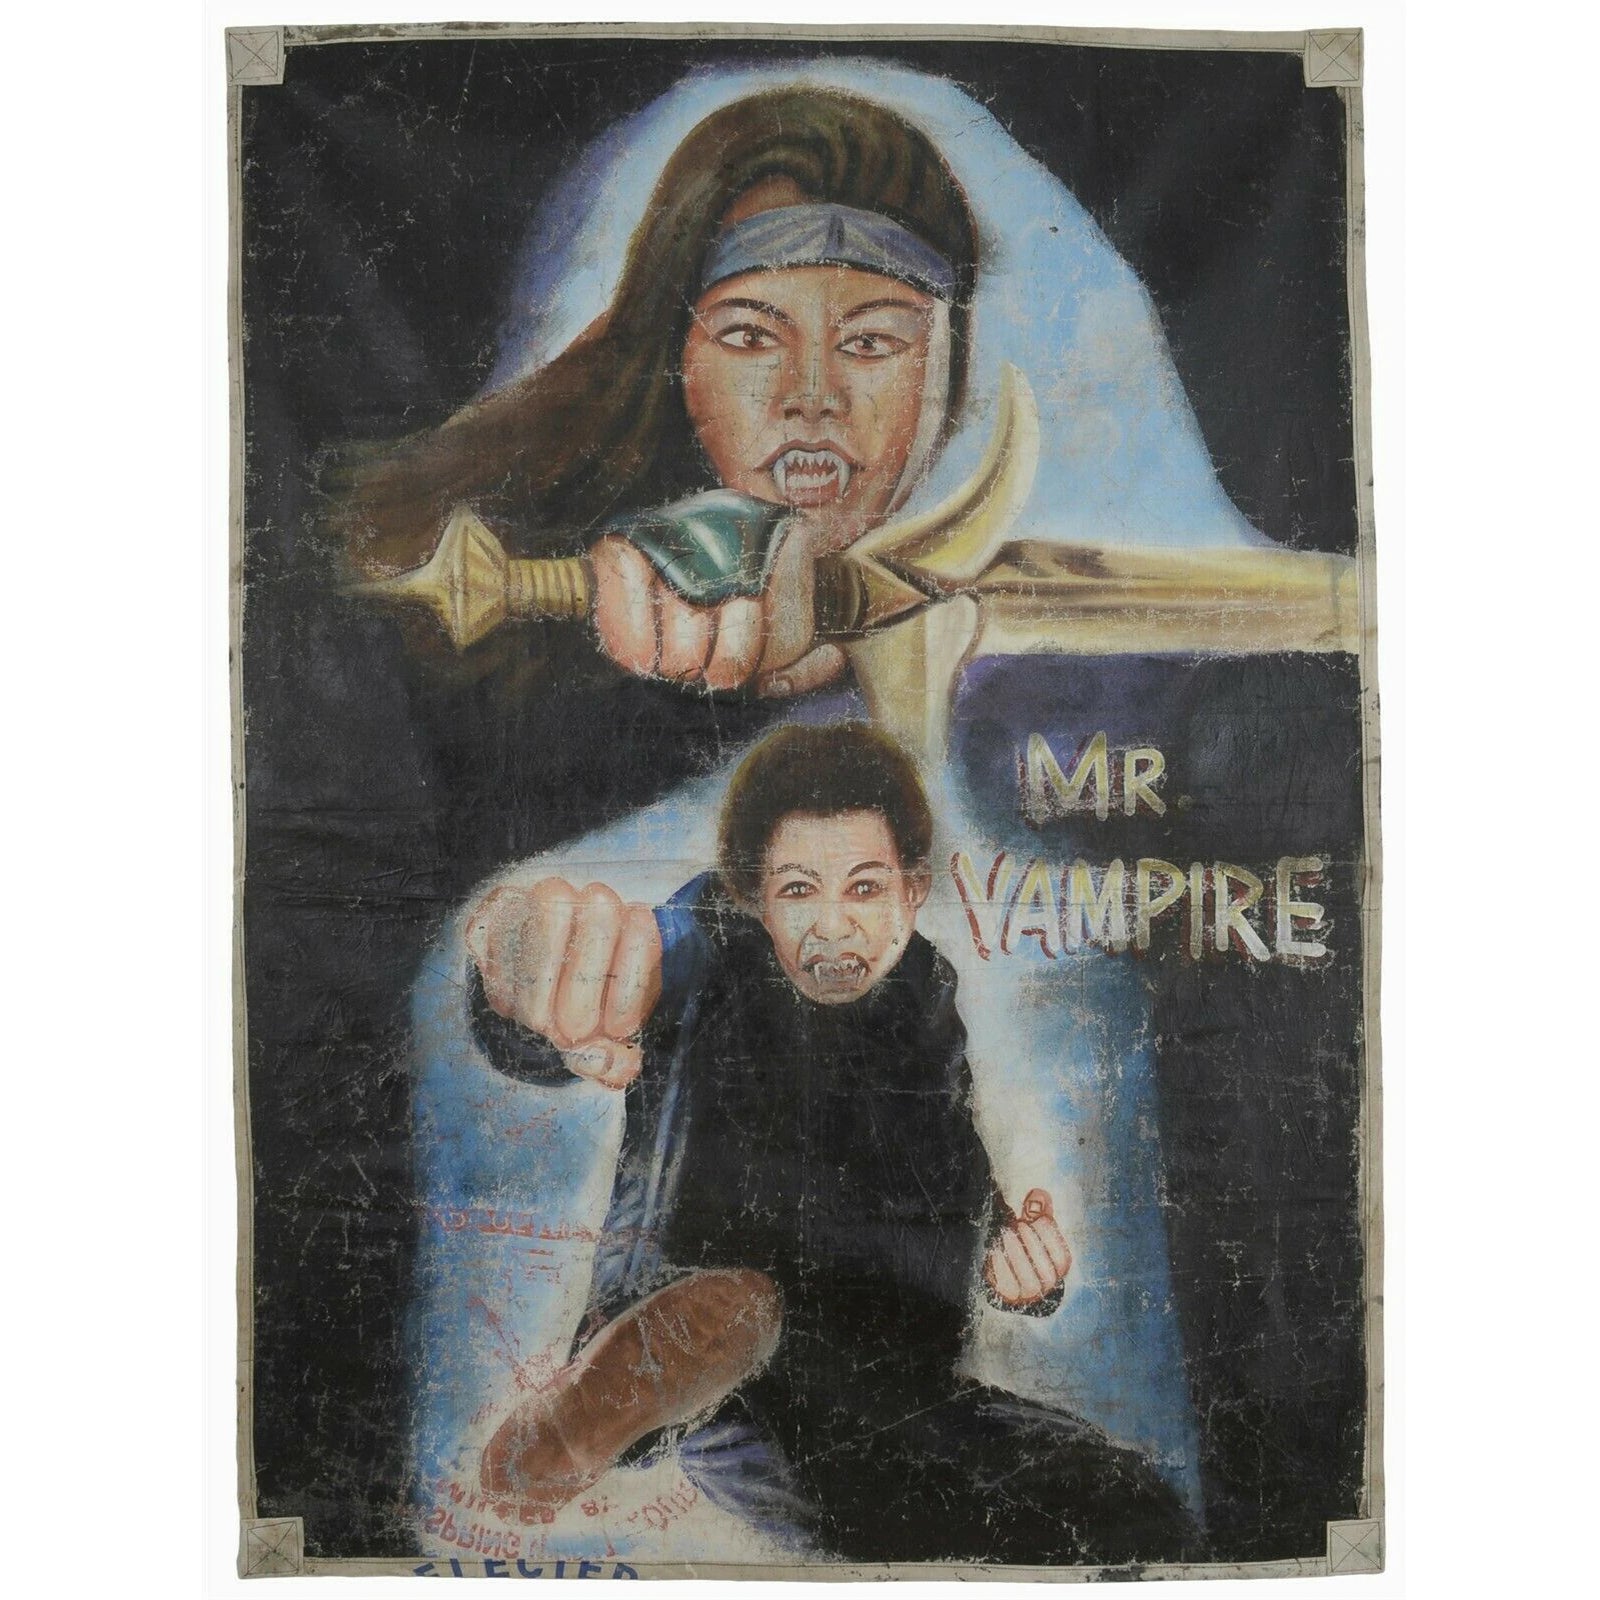 Αφίσα ταινίας της Γκάνας Αφρικανικός κινηματογράφος λαϊκός τοίχος ζωγραφισμένος στο χέρι Σακί από αλεύρι MR. VAMPIRE - Tribalgh